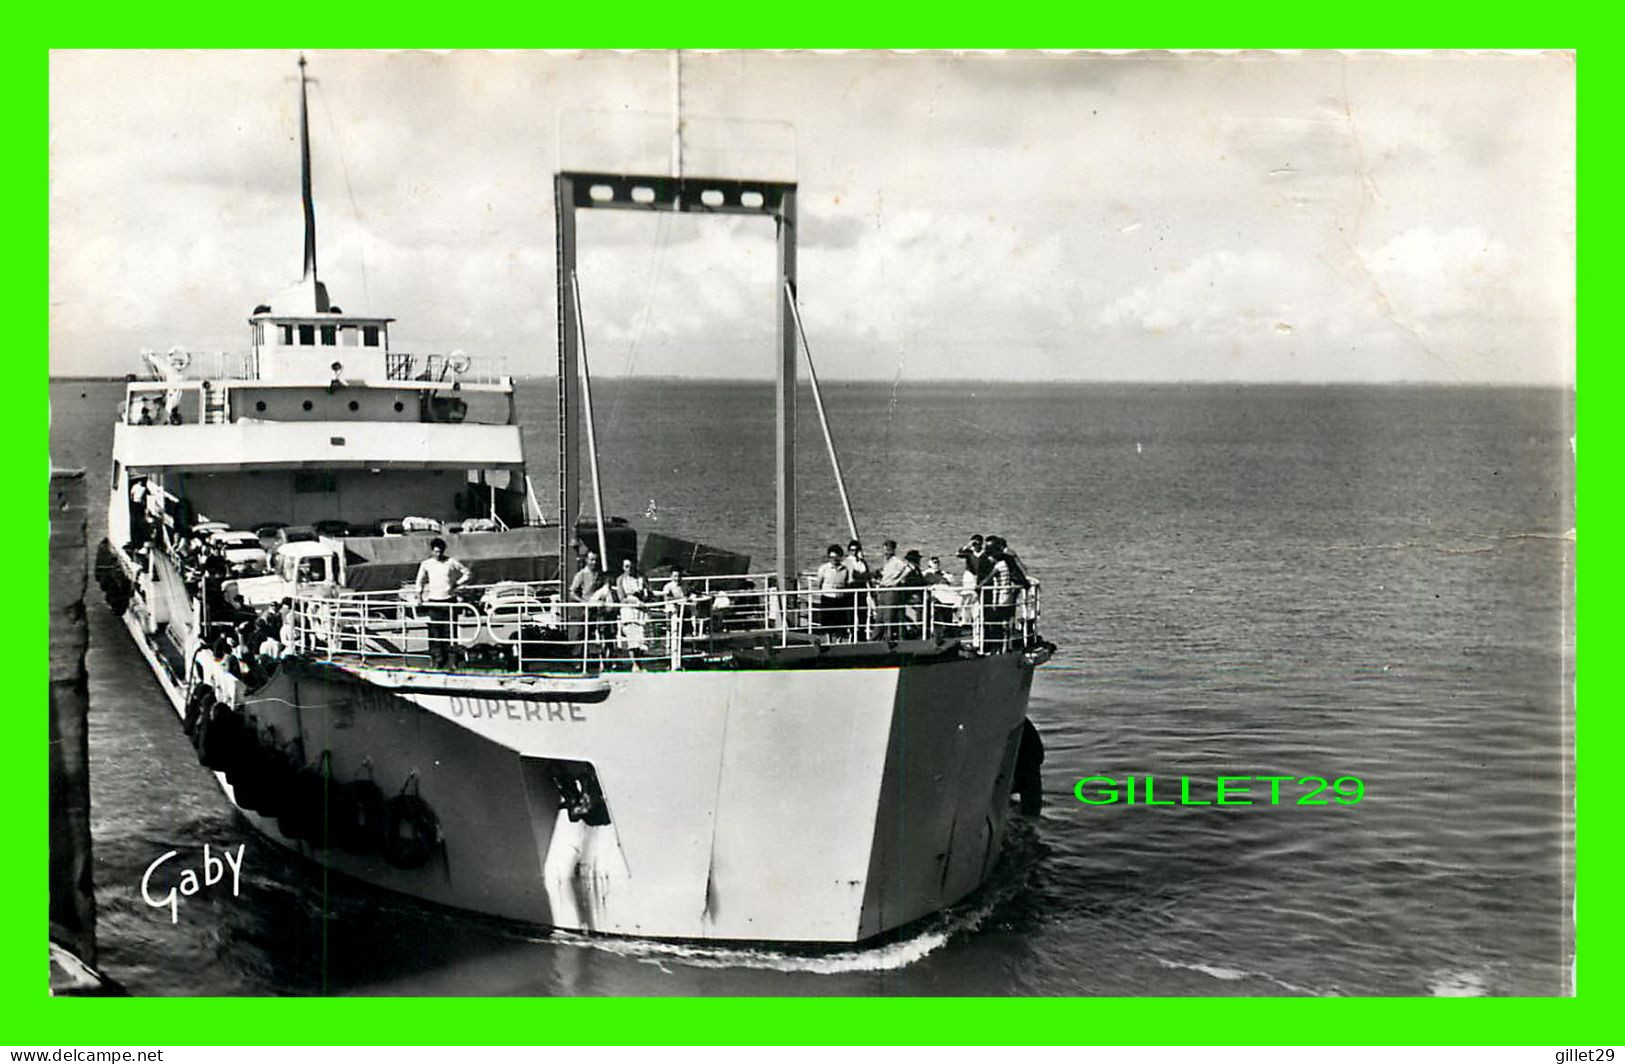 SHIP, BATEAU - " AMIRAL DUPERRE " - LE BAC - ILE DE RE (17) - CIRCULÉE EN 1961 -  EDITIONS GABY - ARTAUD PÈRE ET FILS - - Commerce